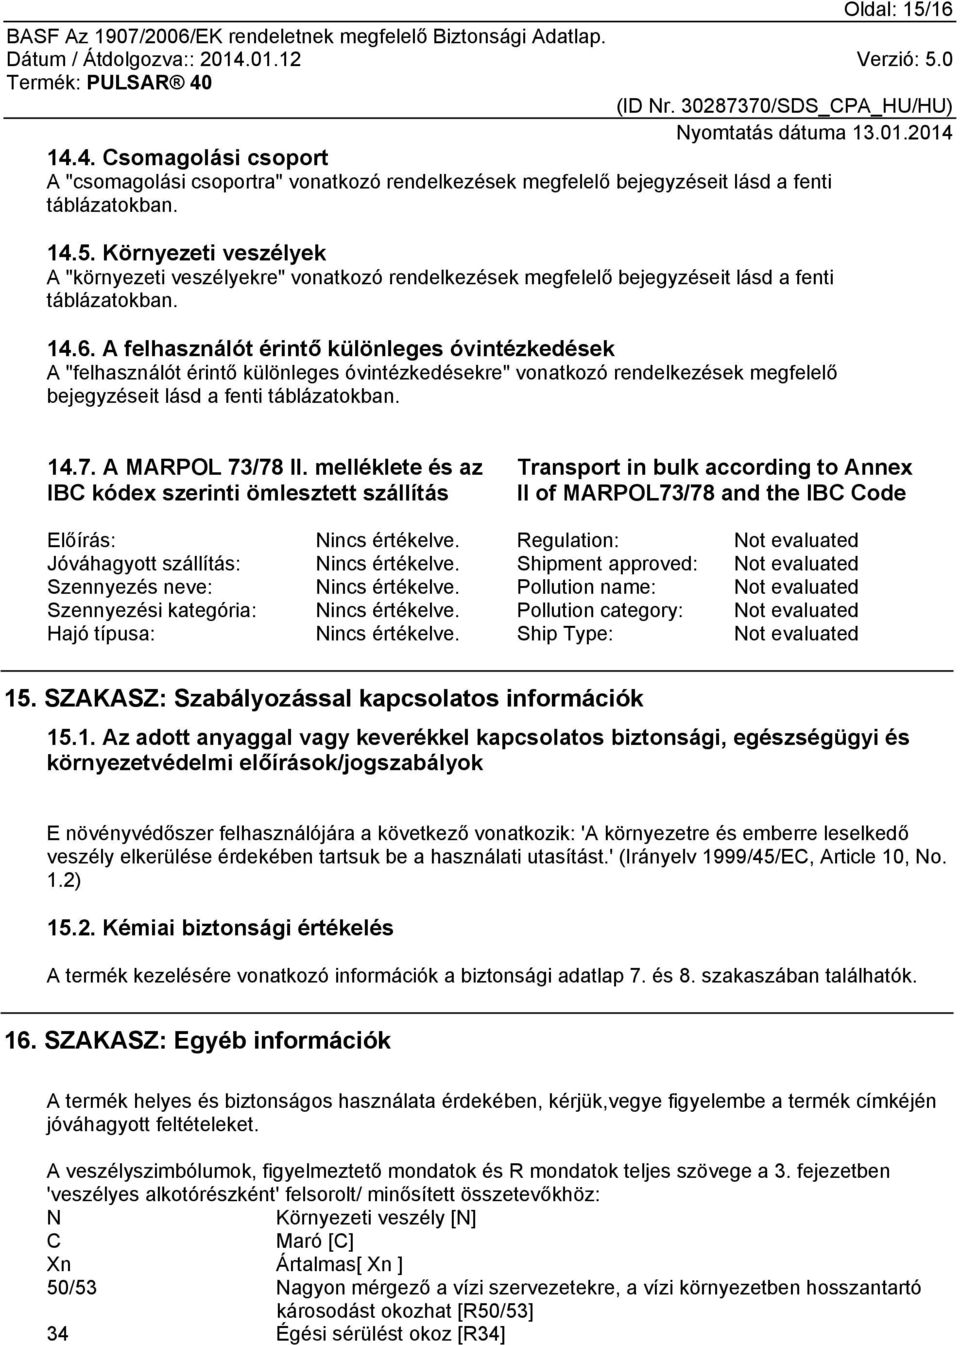 A MARPOL 73/78 II. melléklete és az IBC kódex szerinti ömlesztett szállítás Transport in bulk according to Annex II of MARPOL73/78 and the IBC Code Előírás: Nincs értékelve.